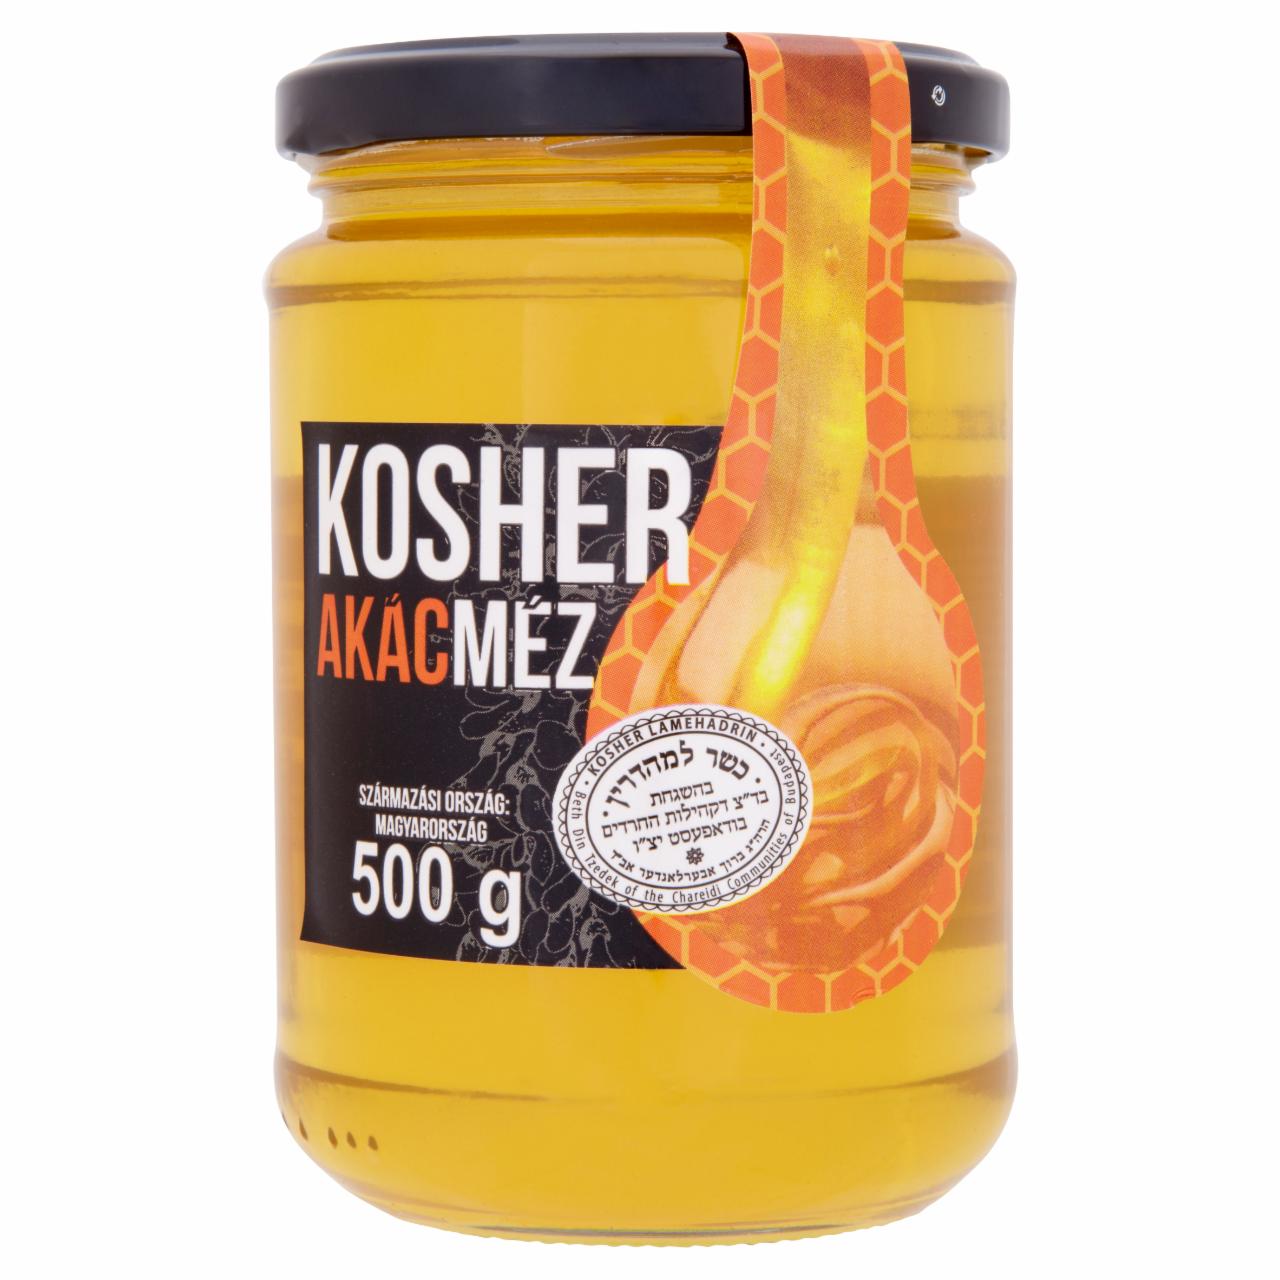 Képek - Kosher akácméz 500 g